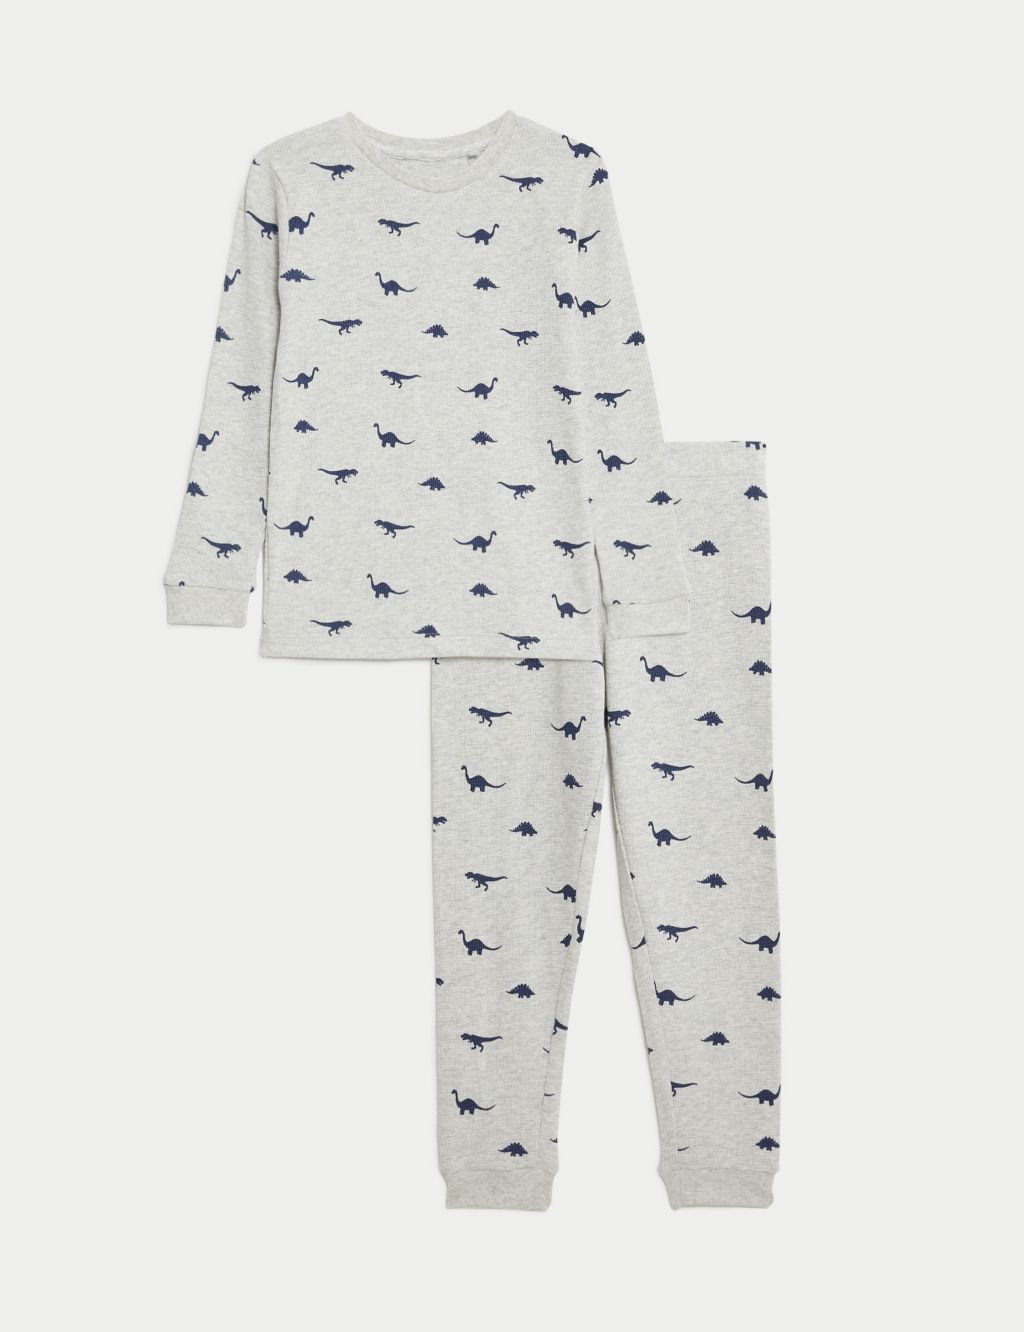 Pure Cotton Dinosaur Print Pyjamas (1-8 Yrs) image 2